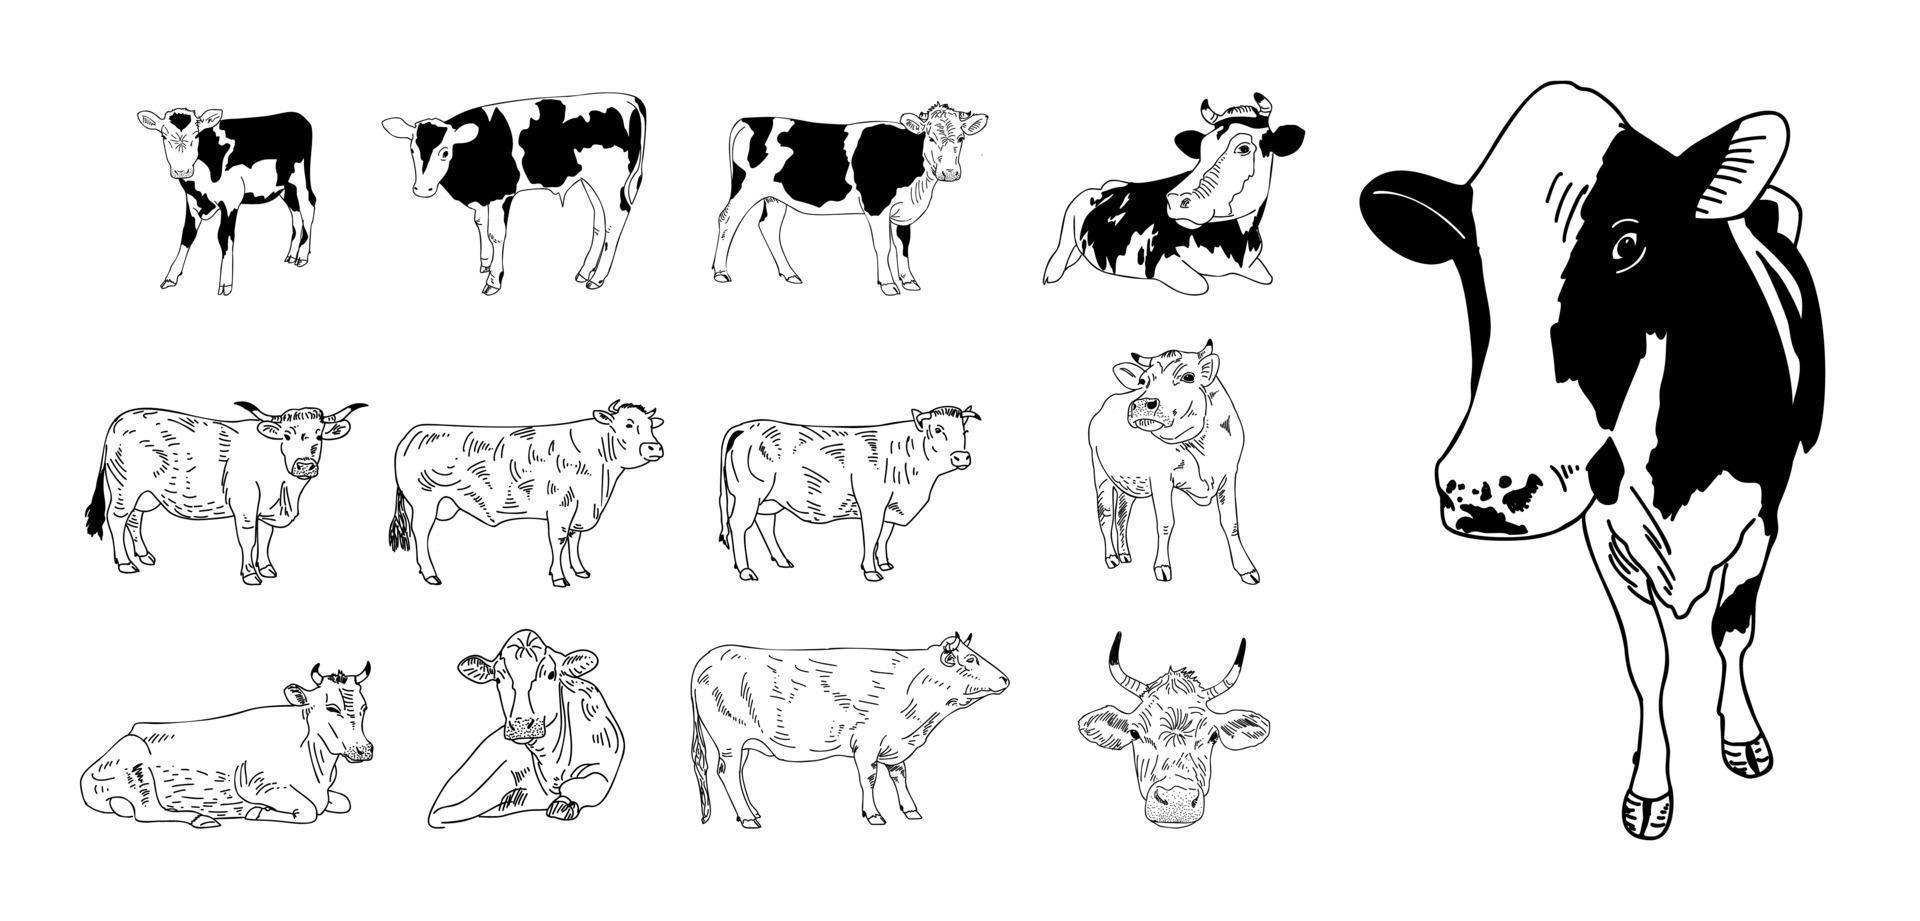 Kuh lokalisiert auf weißer, handgezeichneter Vektorillustration. vektor